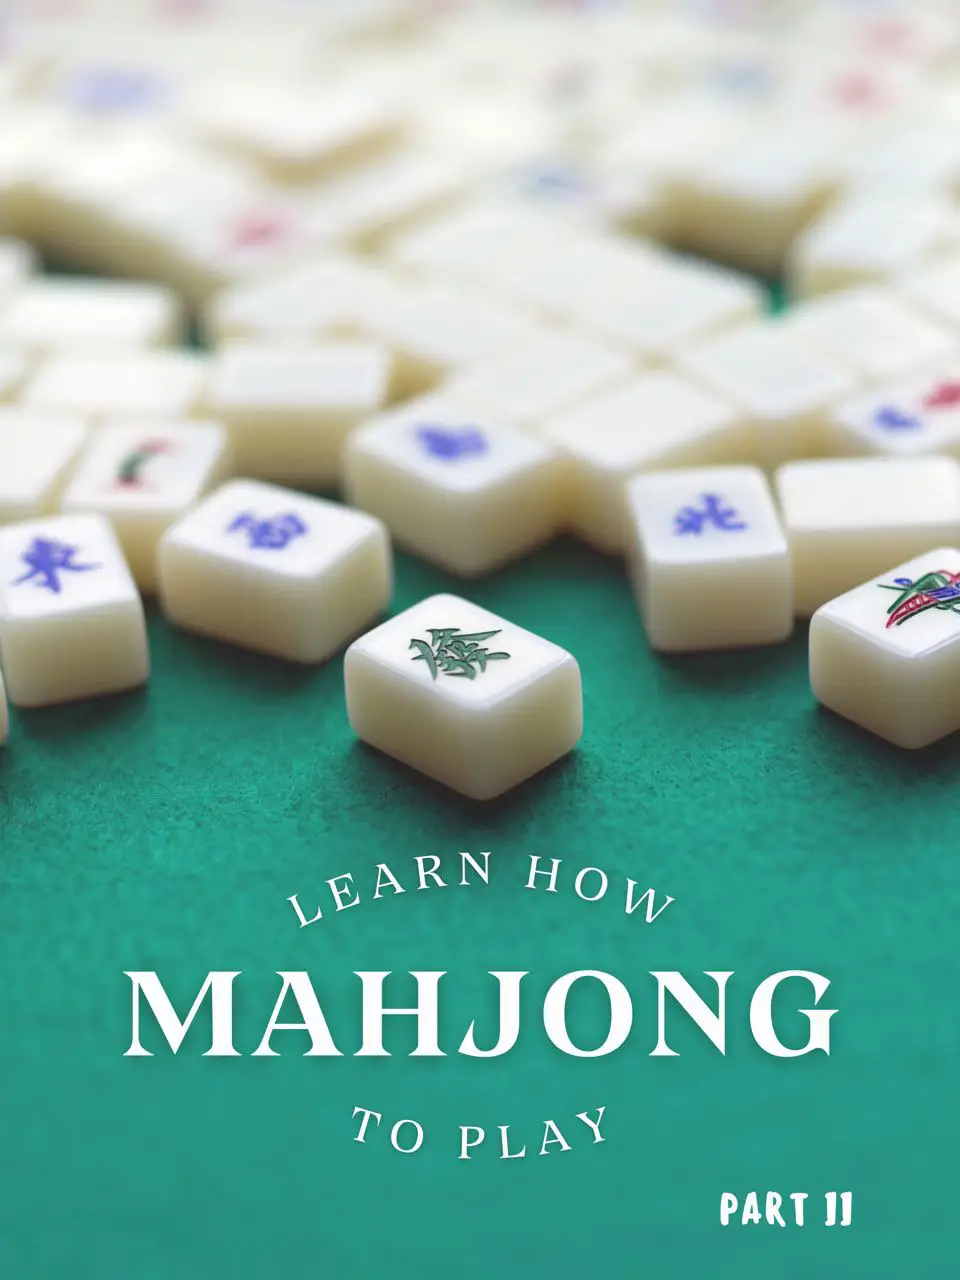 Viwawa mahjong